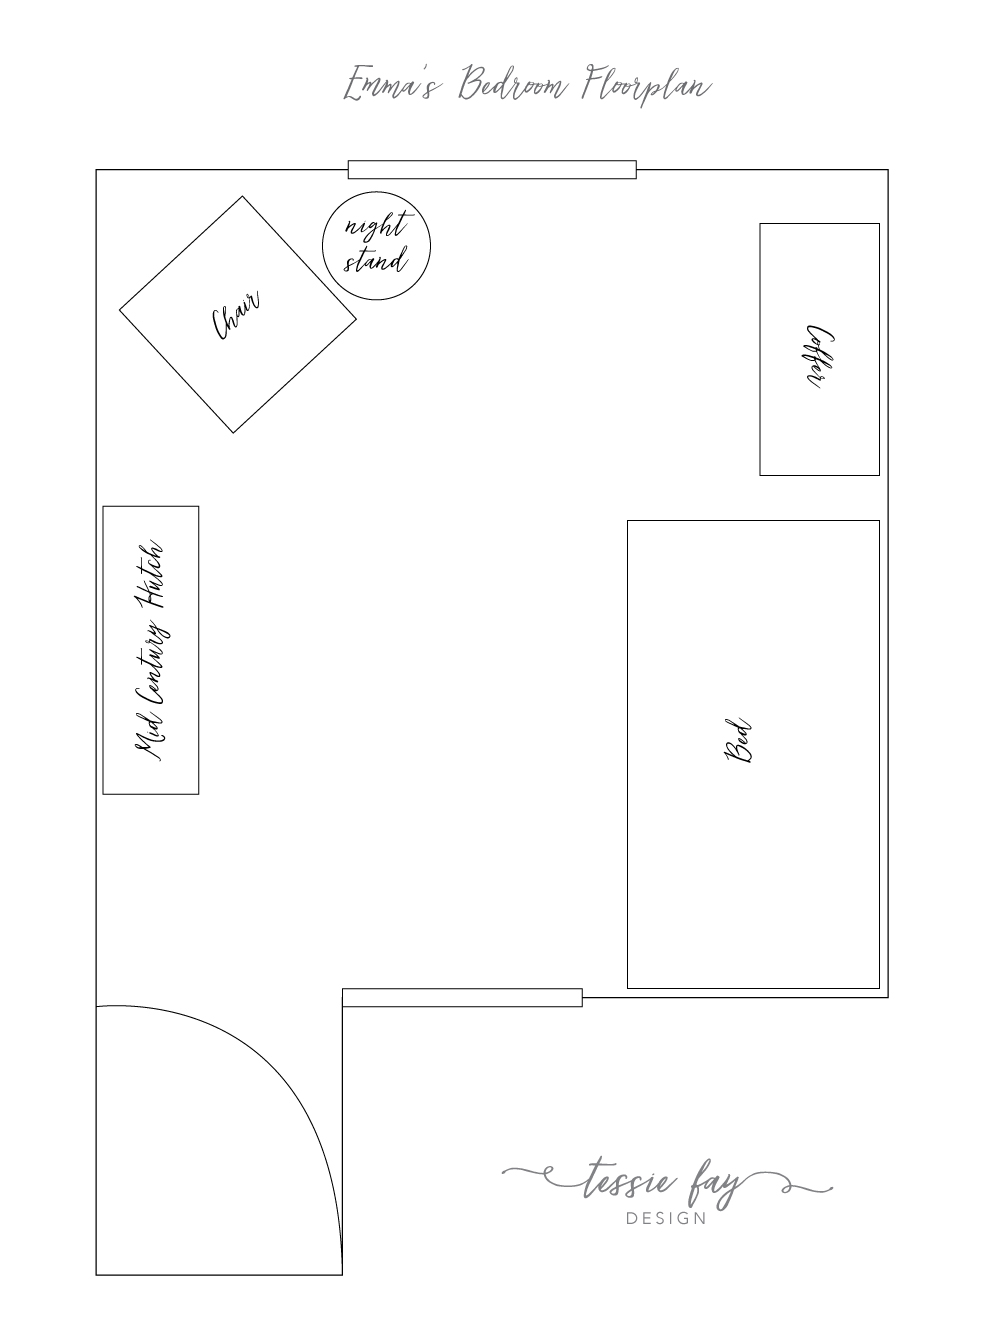 Girl's Bedroom Floorplan